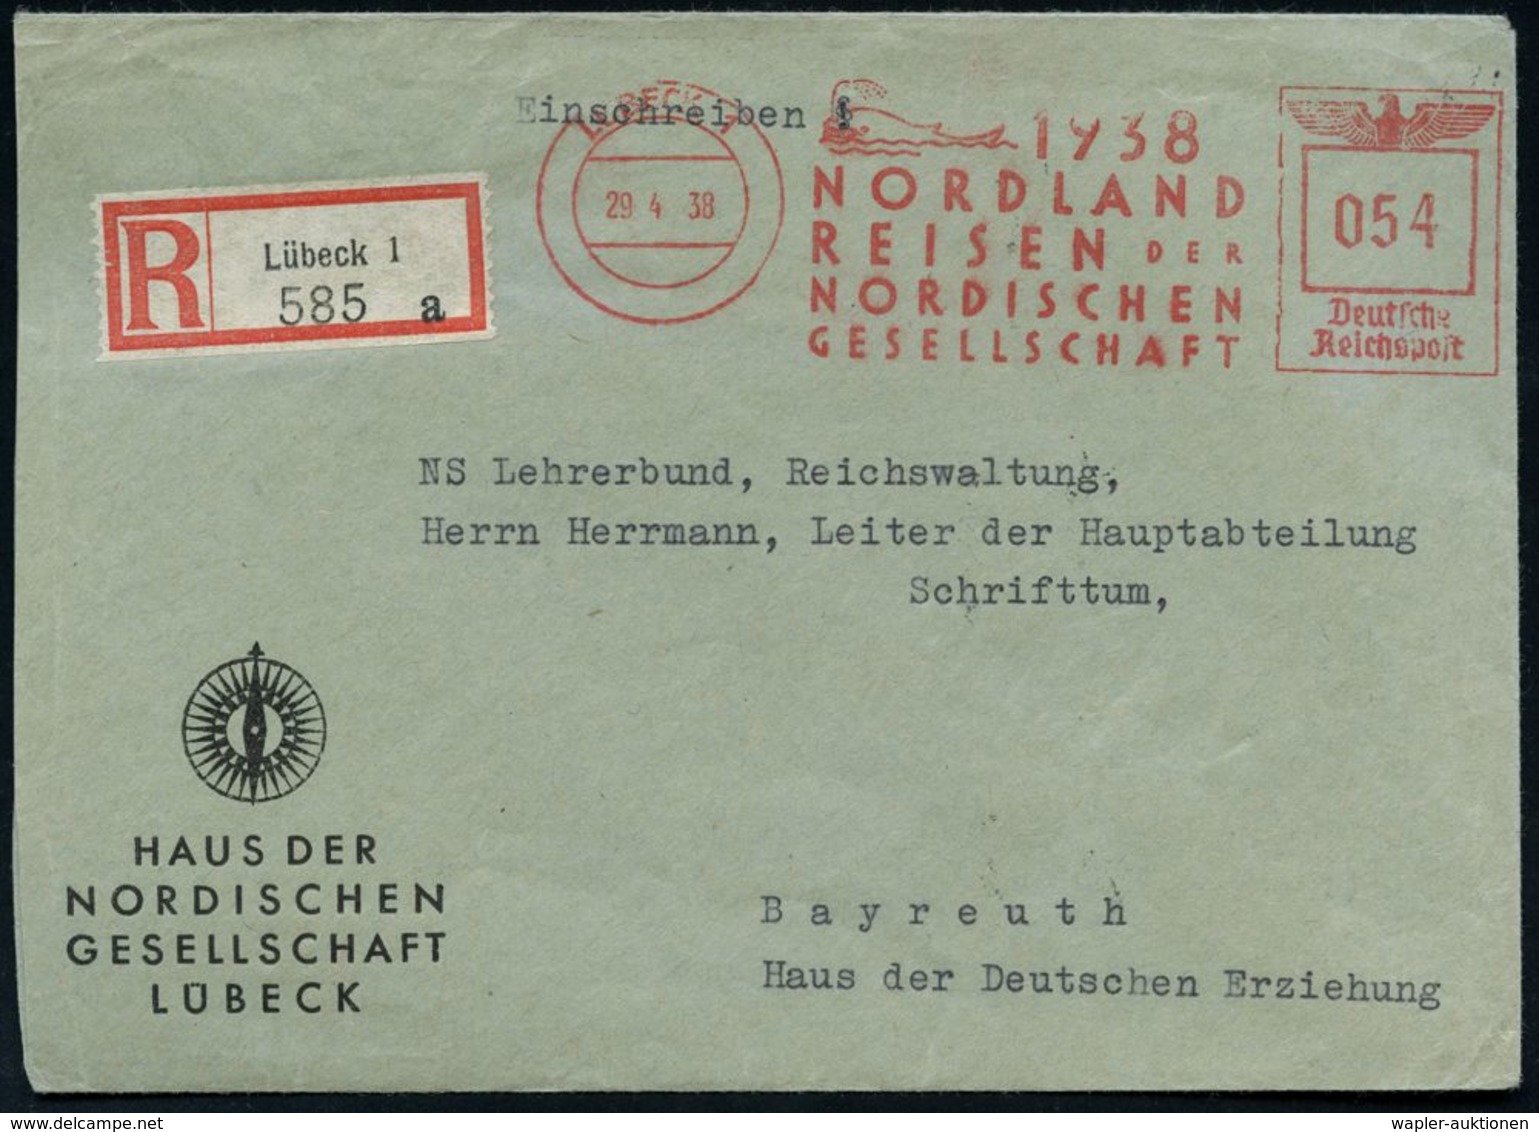 LÜBECK 1/ 1937/ NORDLAND/ REISEN DER/ NORDISCHEN/ GESELLSCHAFT 1938 (29.4.) Sehr Seltener AFS 054 Pf. = Wal (bläst Wasse - Expediciones árticas